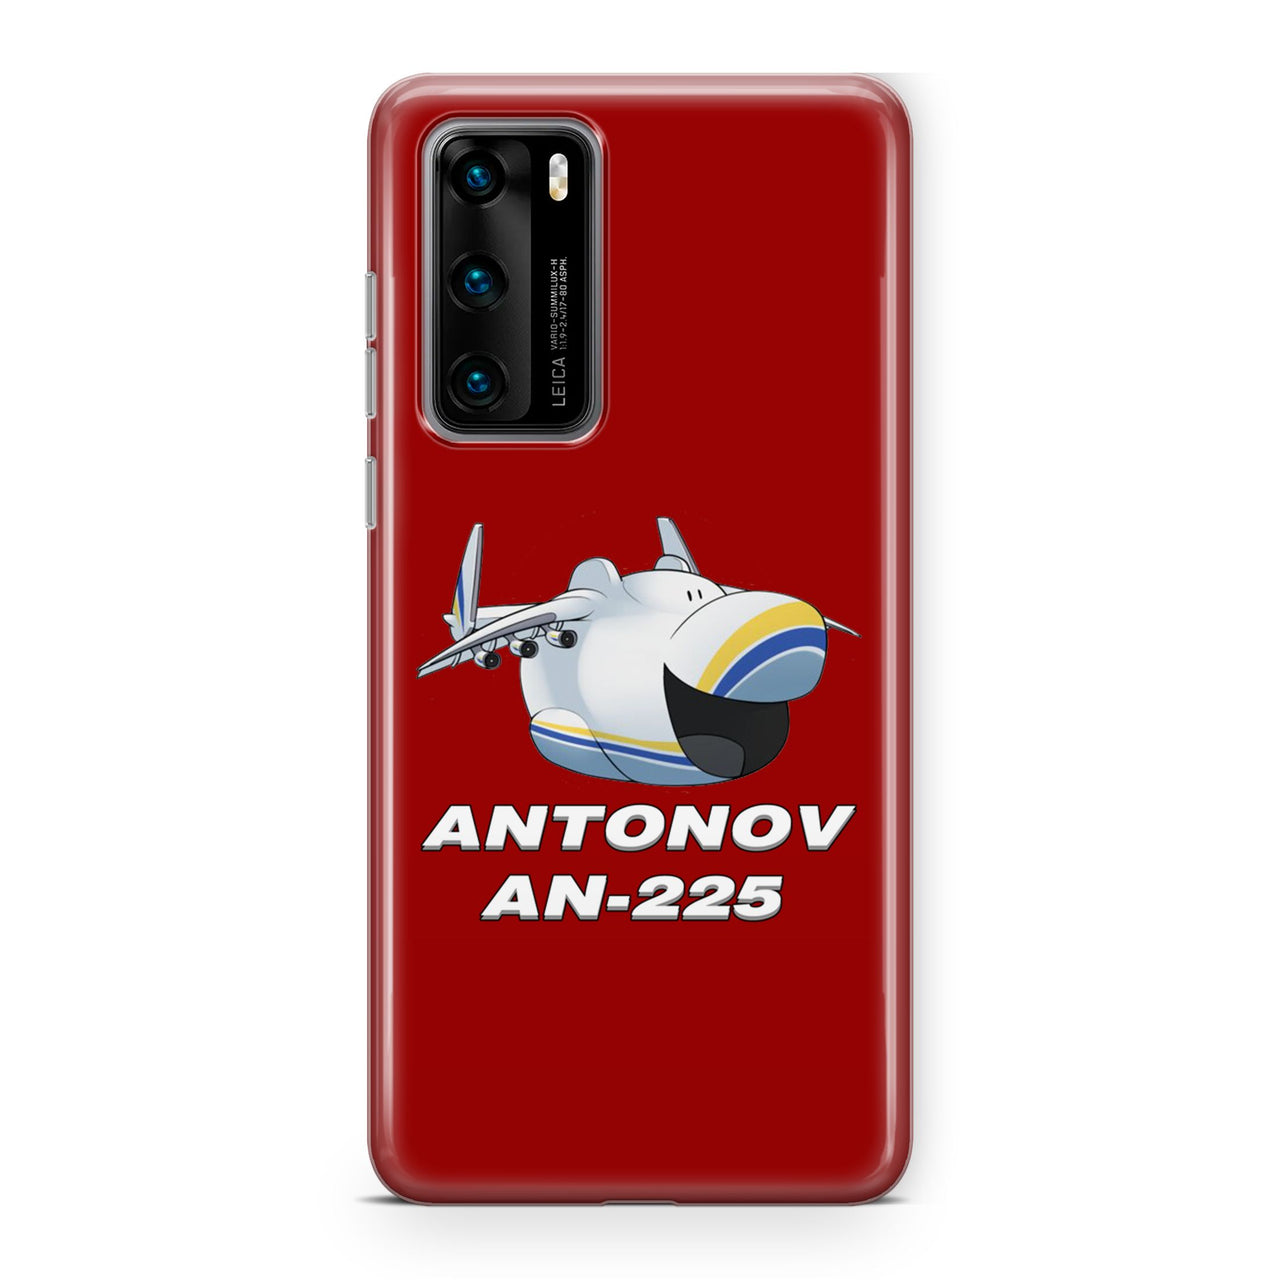 Antonov AN-225 (23) Designed Huawei Cases